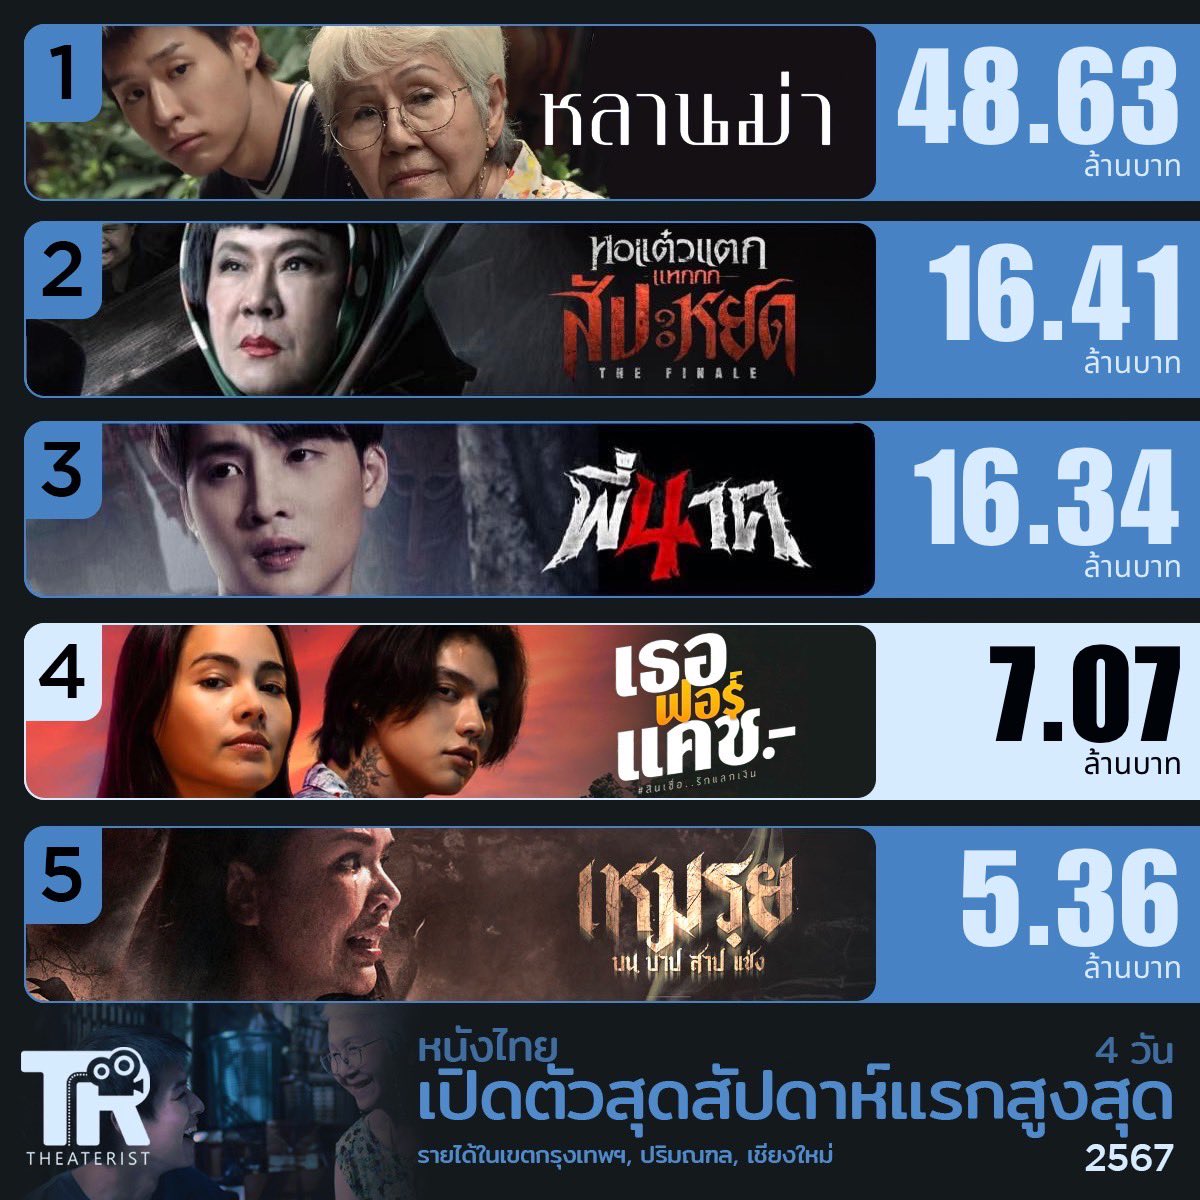 #เธอฟอร์แคช ทำเงินสุดสัปดาห์แรกในเขตกรุงเทพ,ปริมณฑล,เชียงใหม่ไปที่ 7.07 ล้านบาท ซึ่งเป็นหนังไทยทำเงินเปิดตัวสุดสัปดาห์แรกสูงอันดับ 4 ในรอบปีนี้

#LoveYouToDebt #ไบร์ทวชิรวิชญ์ #ญาญ่าอุรัสยา #bbrightvc #urassayas
#หลานม่า #bbillkin #บิวกิ้น #tontawan_t #movietwit